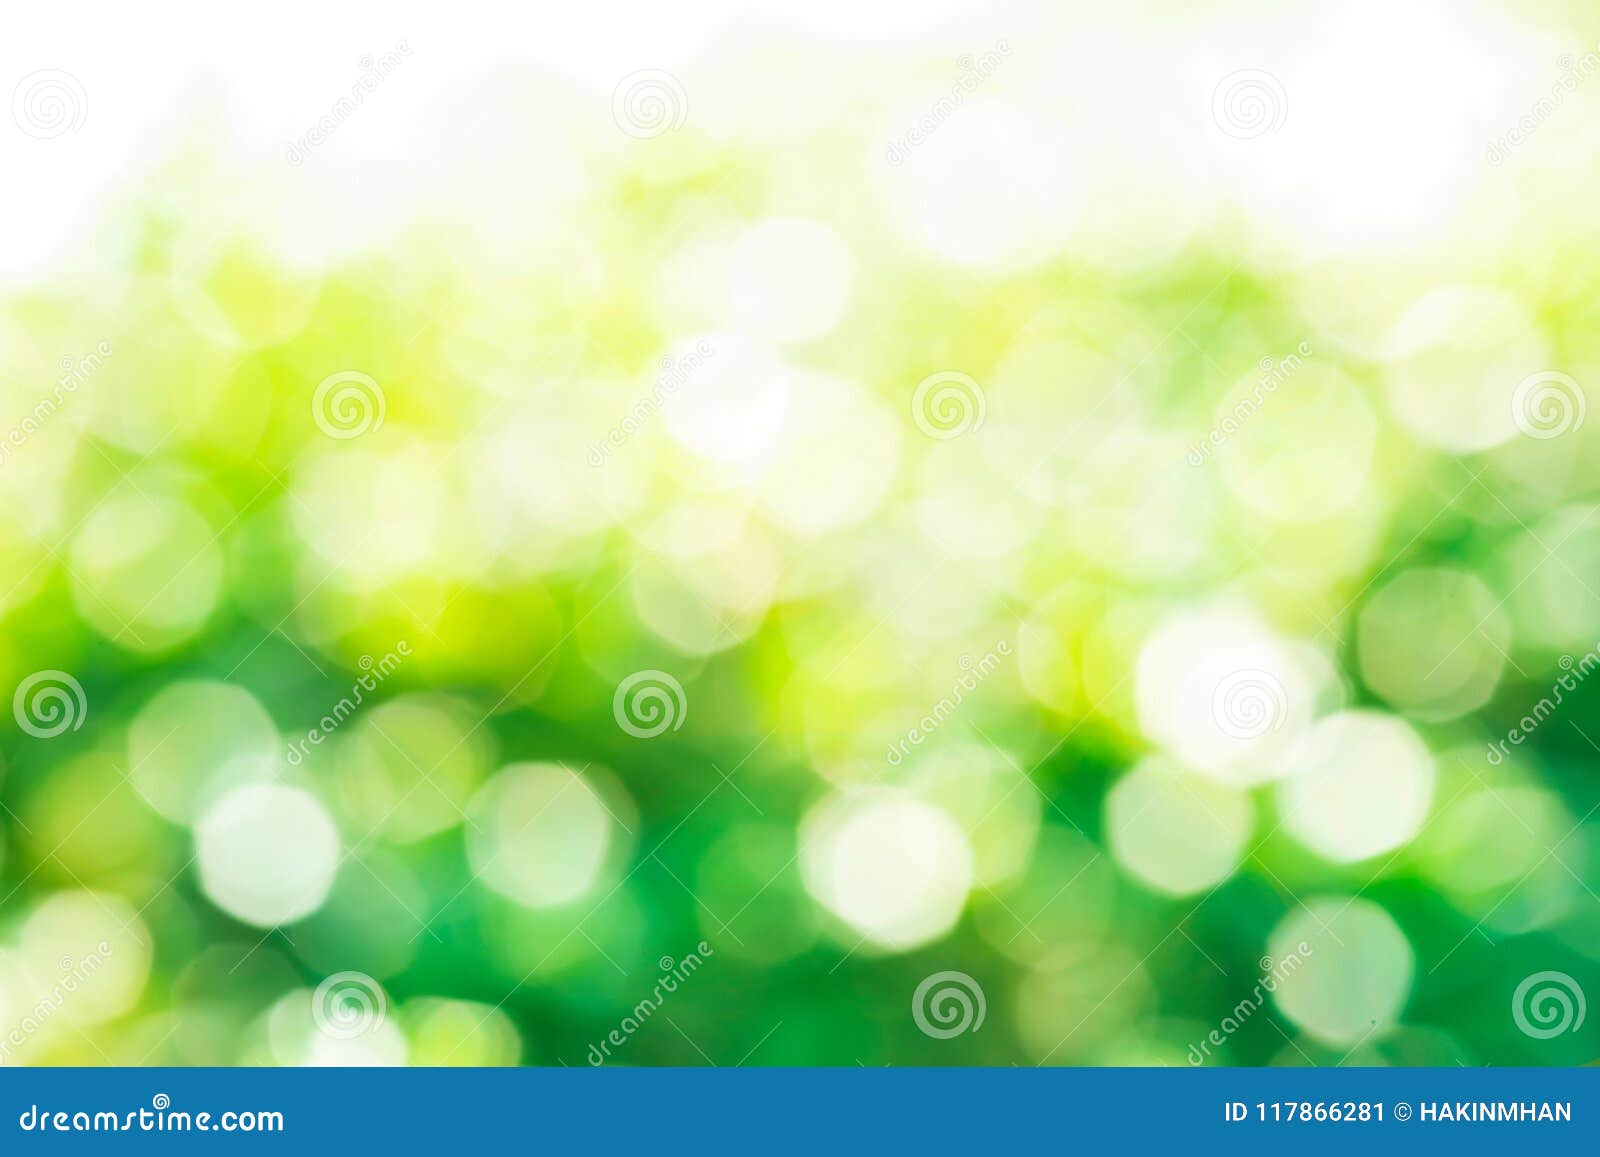 Bokeh xanh lá làm nổi bật chủ thể của bạn. Nó tạo ra một khung cảnh mơ màng nhưng cũng rất tươi tắn, giúp cho người xem tập trung hoàn toàn vào những điểm nhấn của bức ảnh. Sự pha trộn giữa ánh sáng và màu xanh tạo ra một hiệu ứng đẹp mắt và rất thú vị.